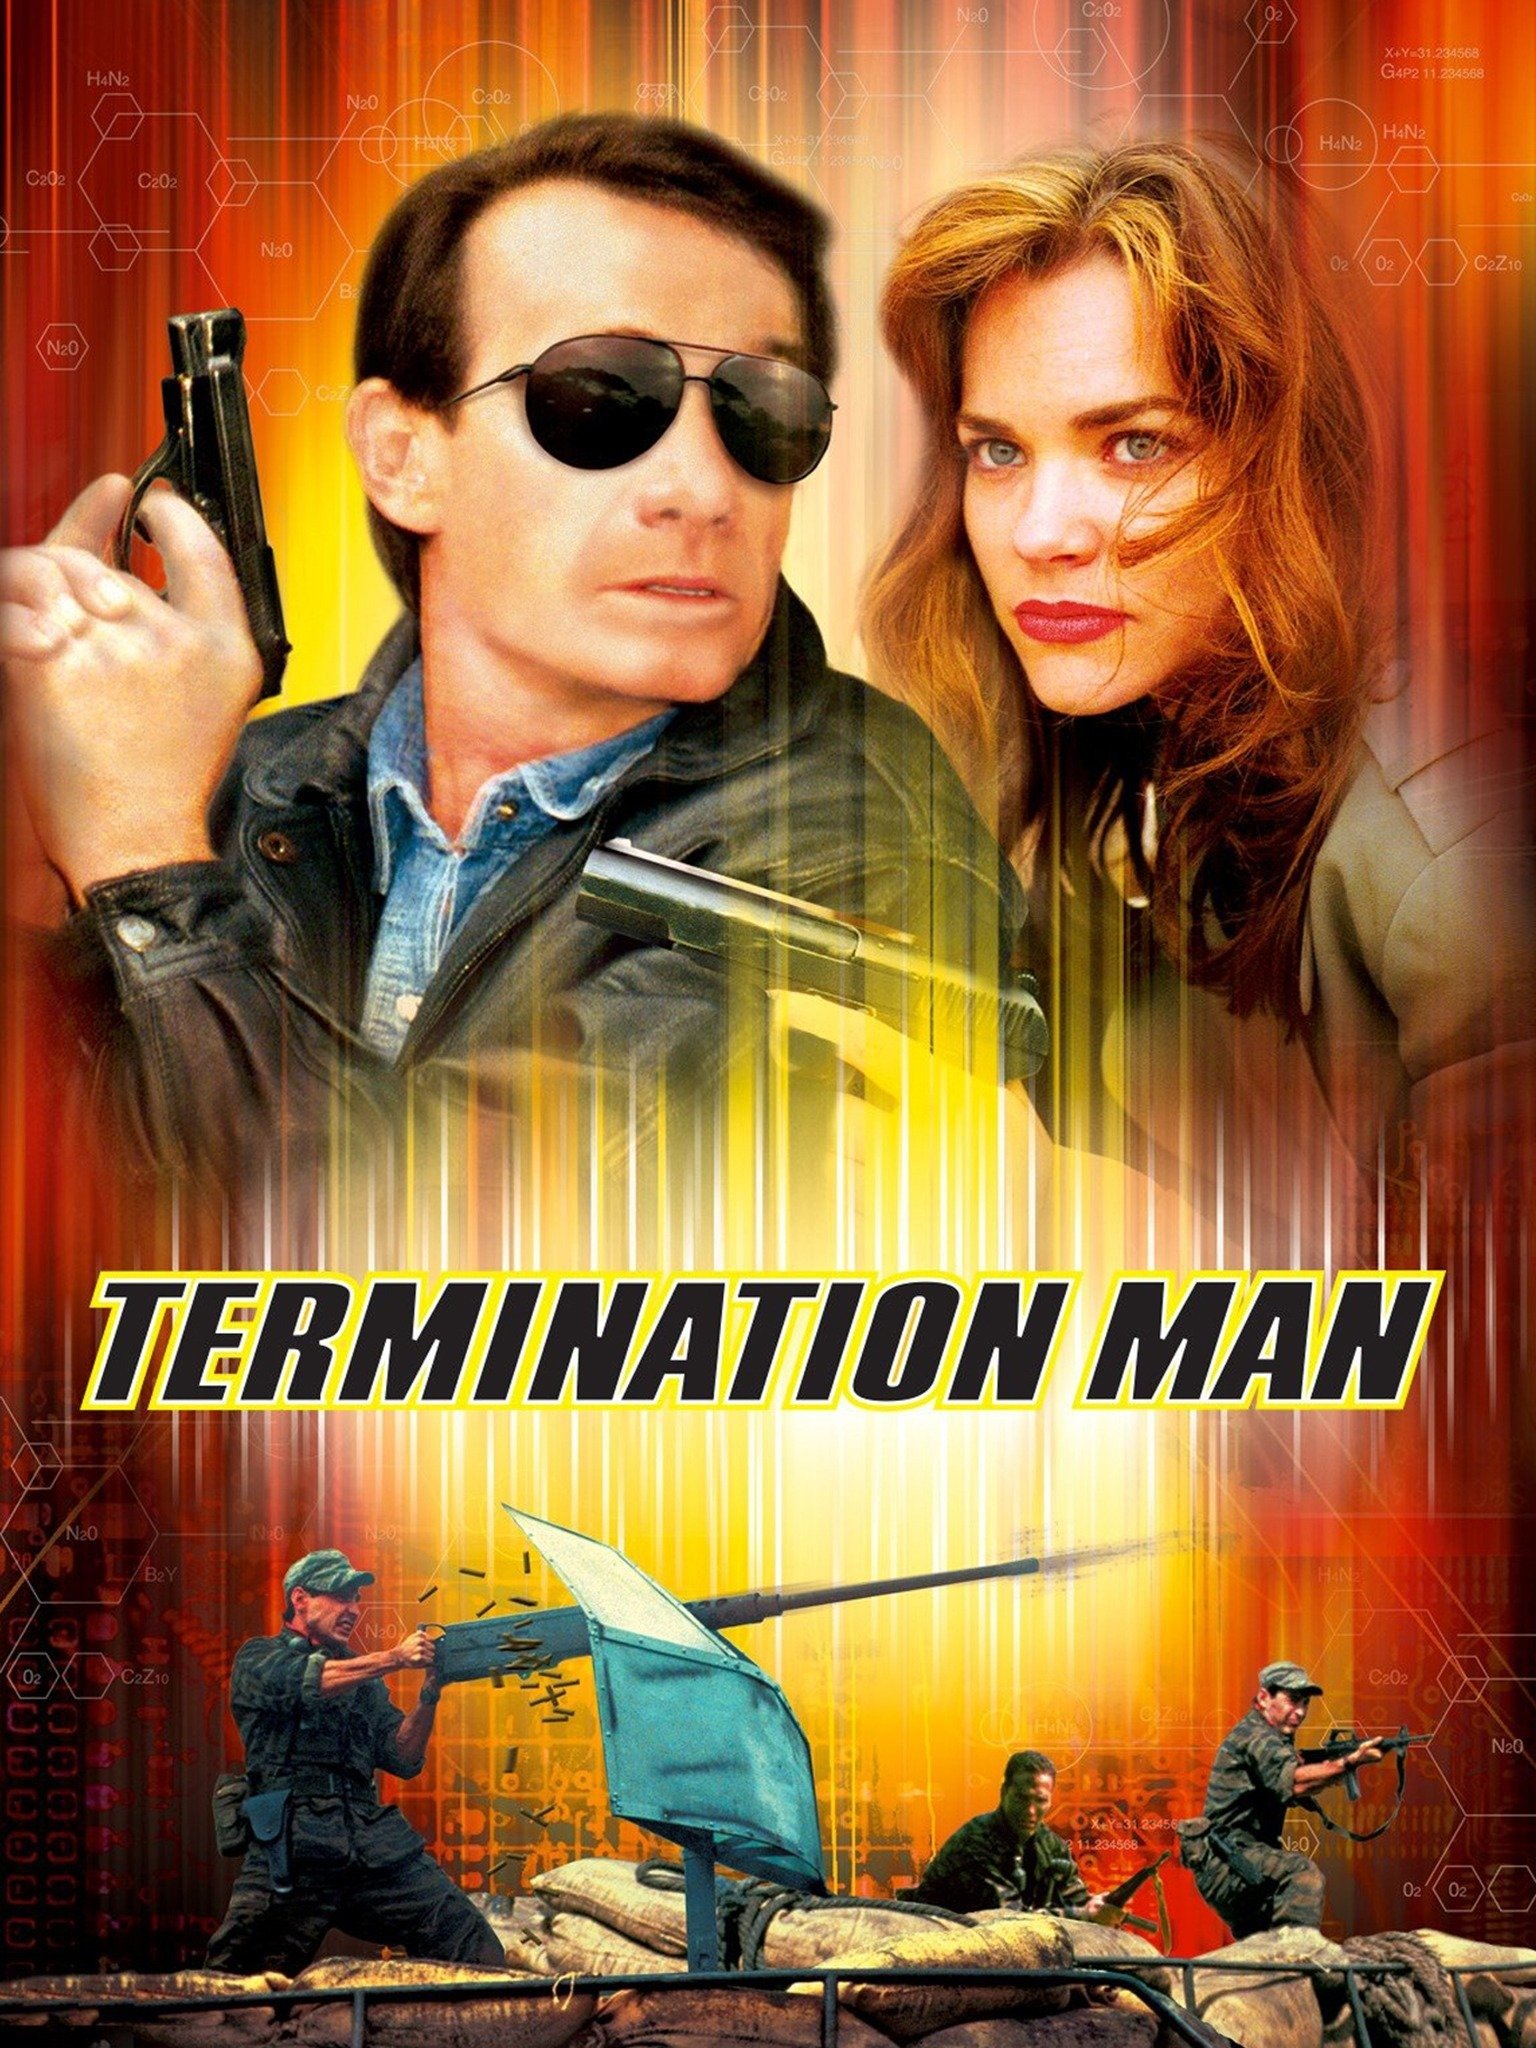 Termination Man - Movie Reviews